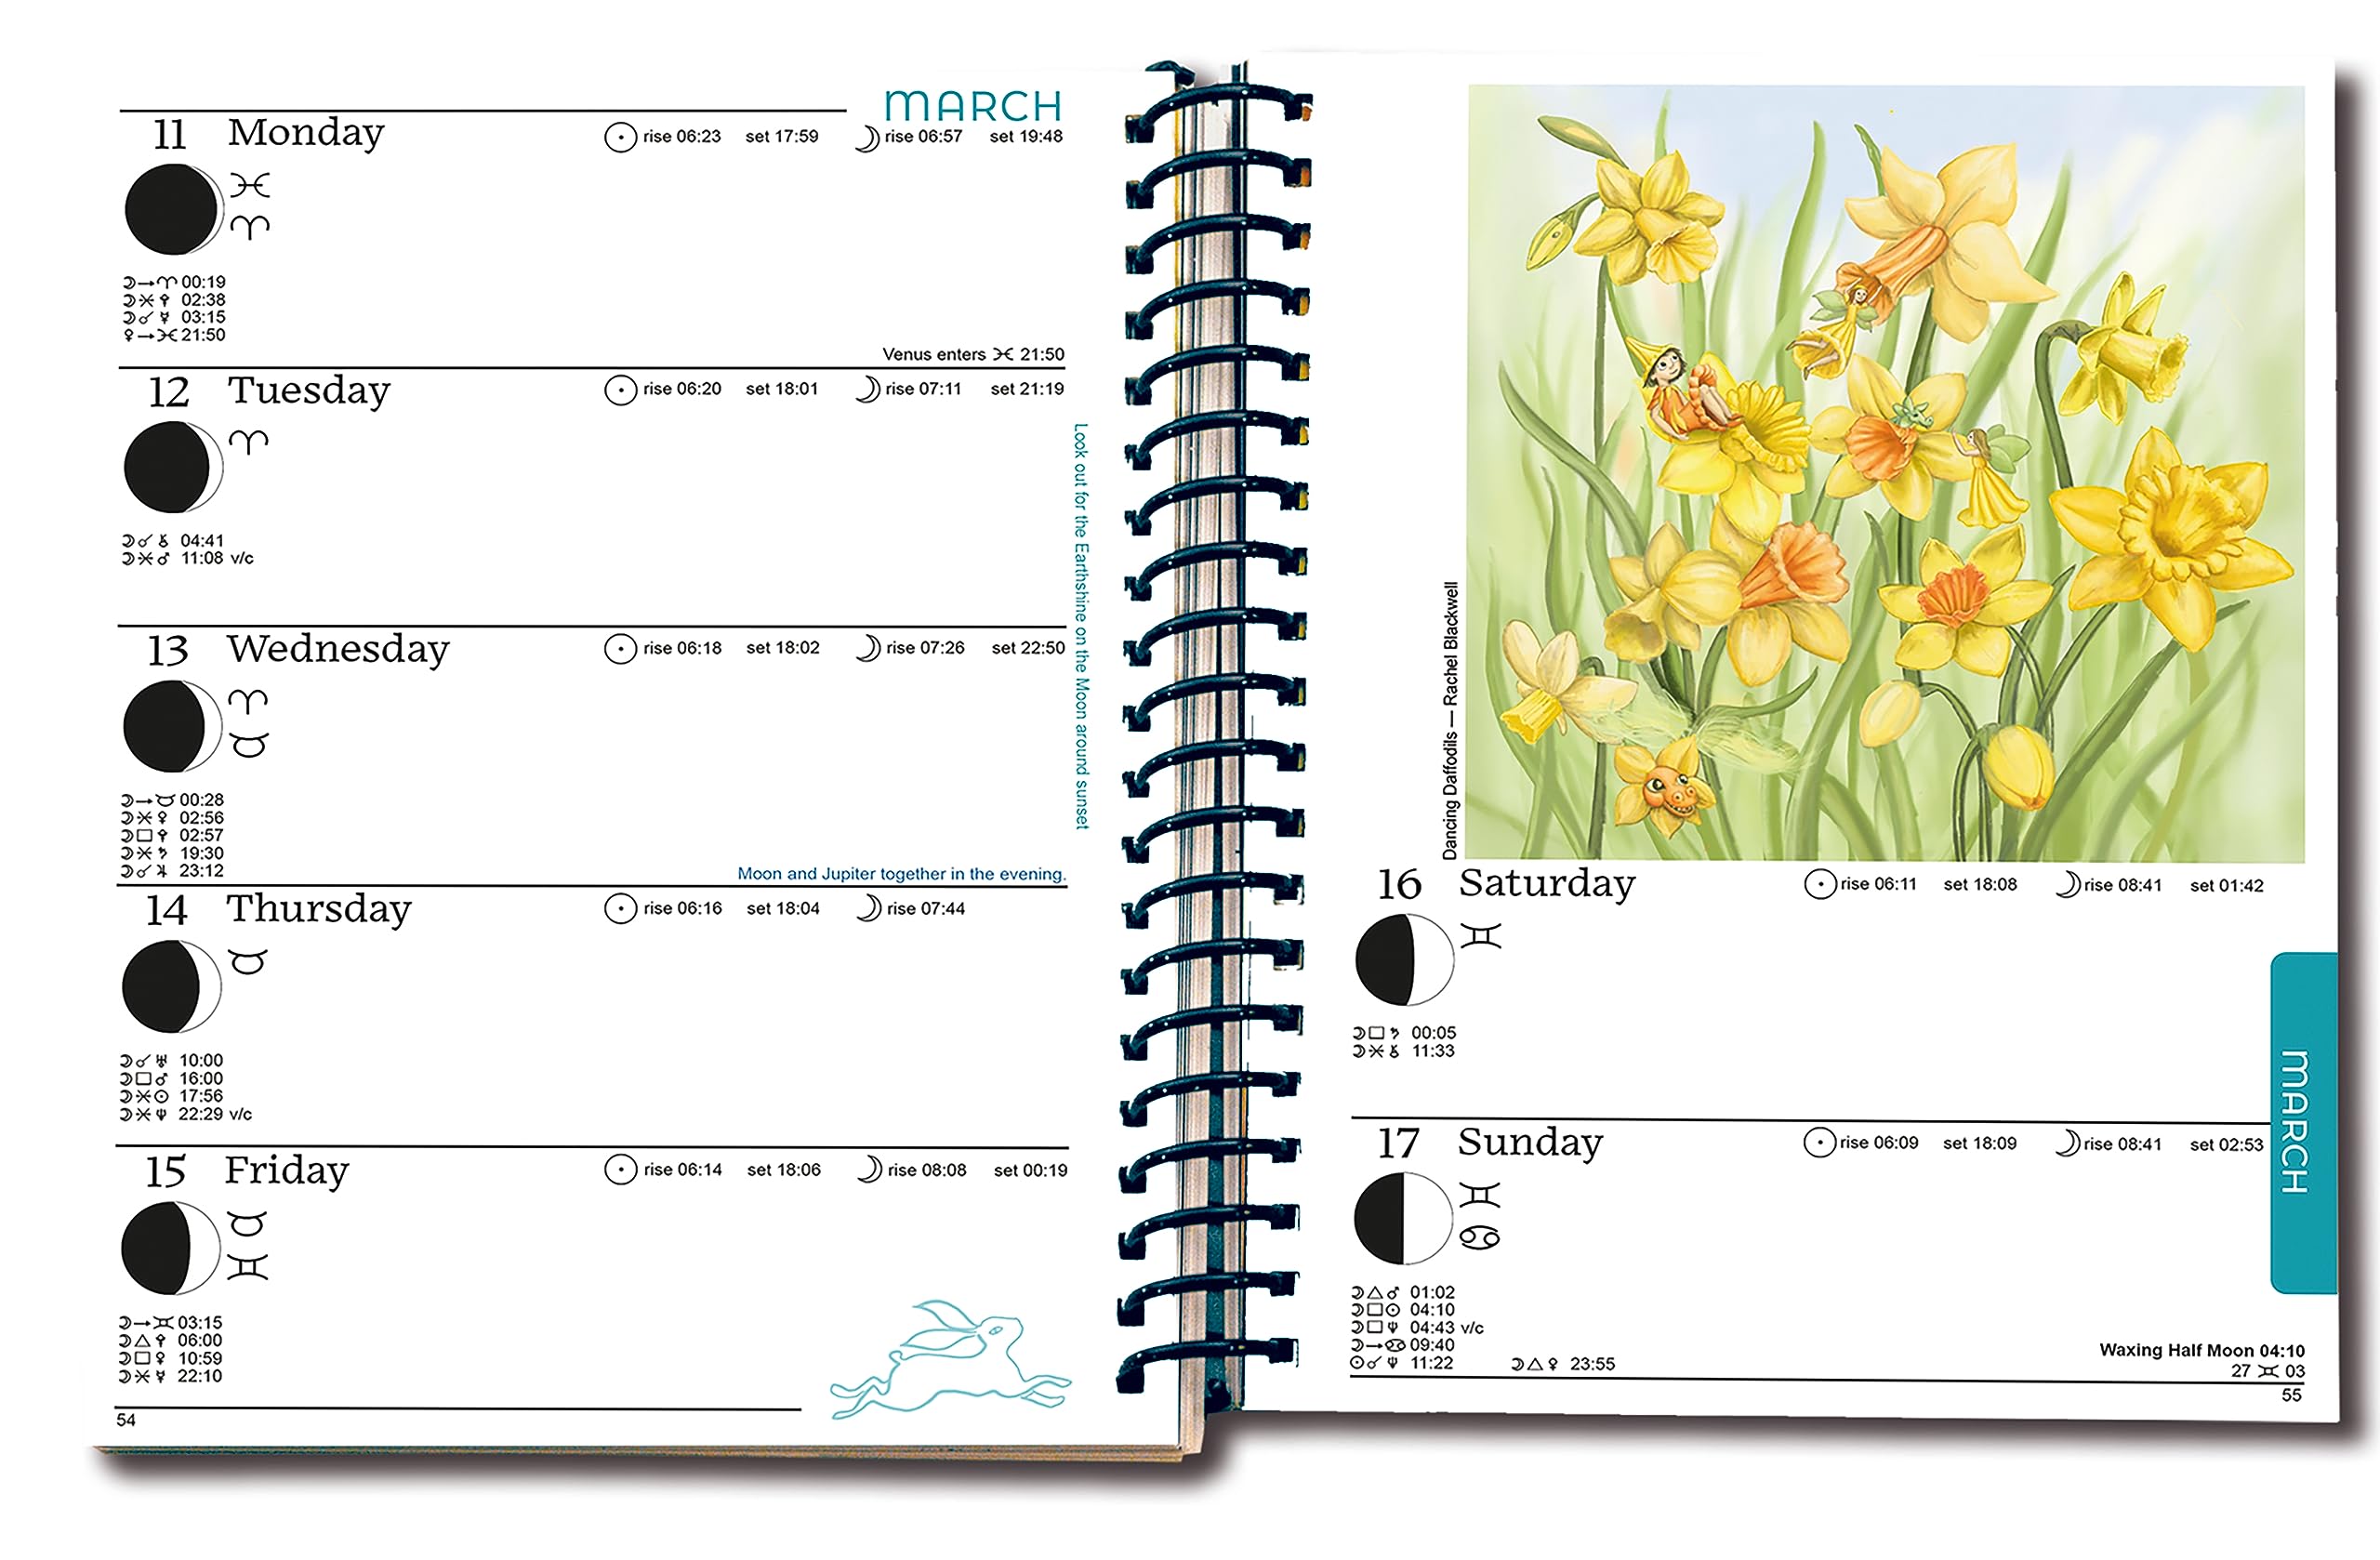 Moon Diary 2024 Datebook Calendar Personal Organiser UK